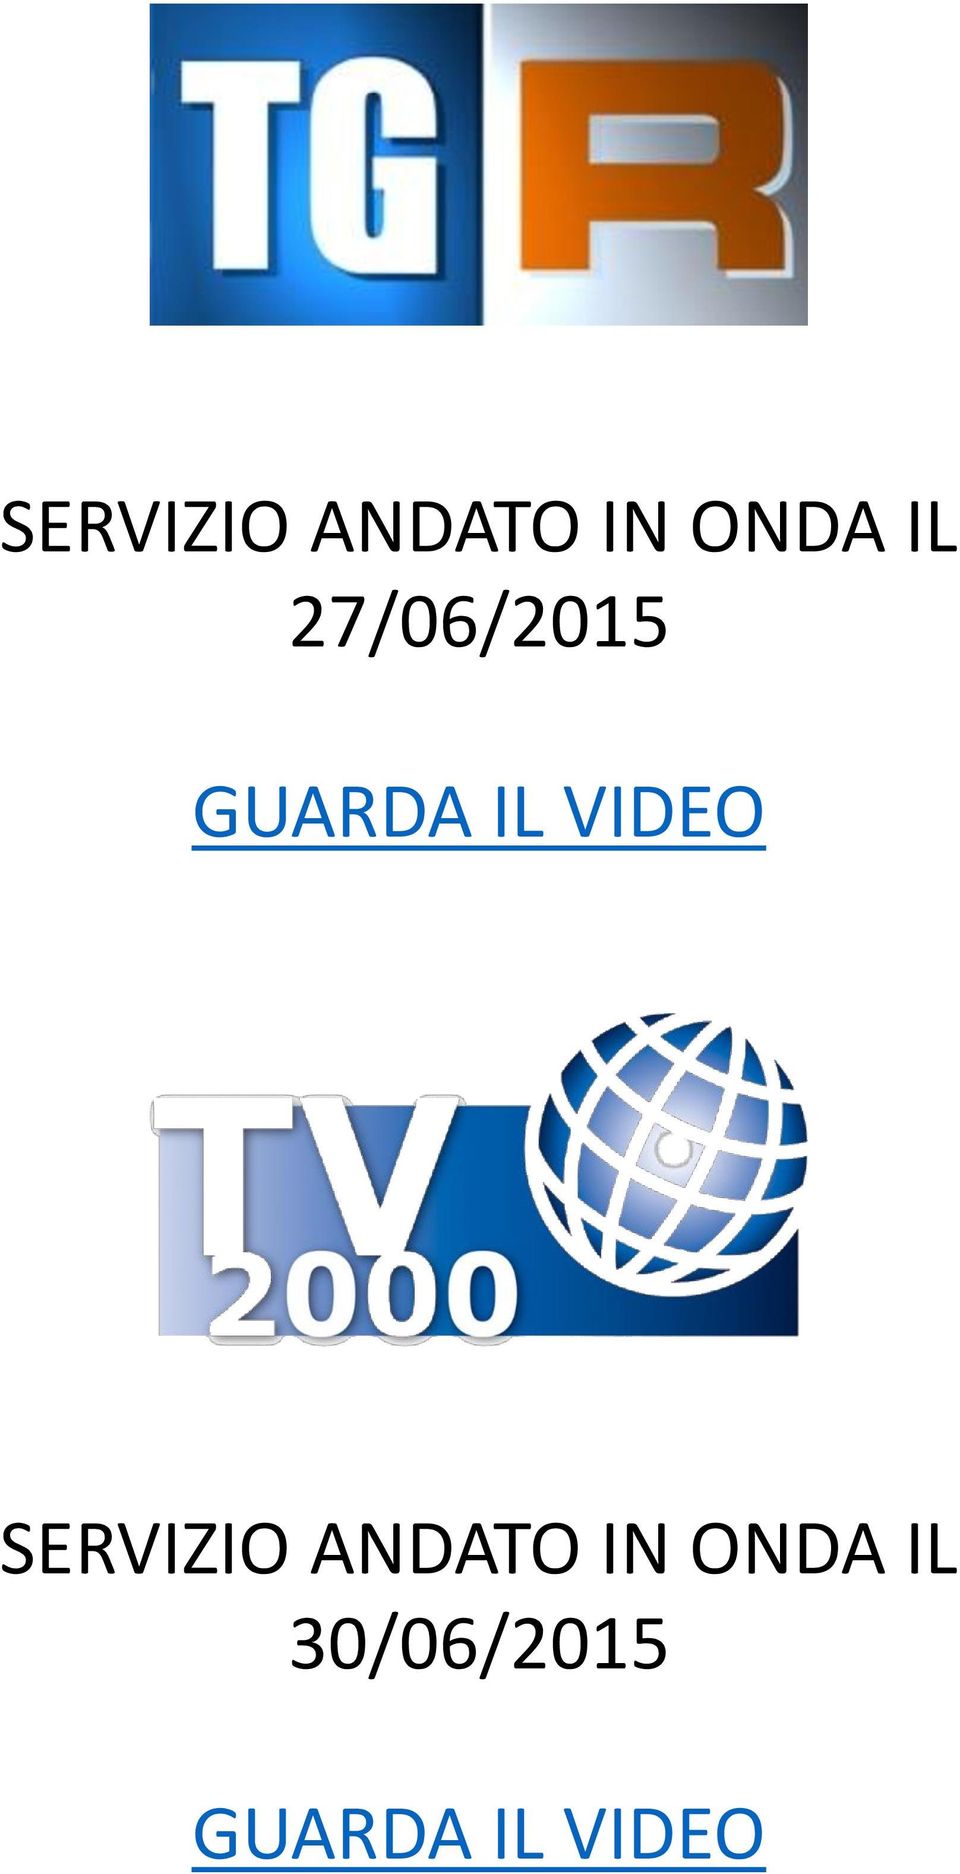 30/06/2015 GUARDA IL VIDEO